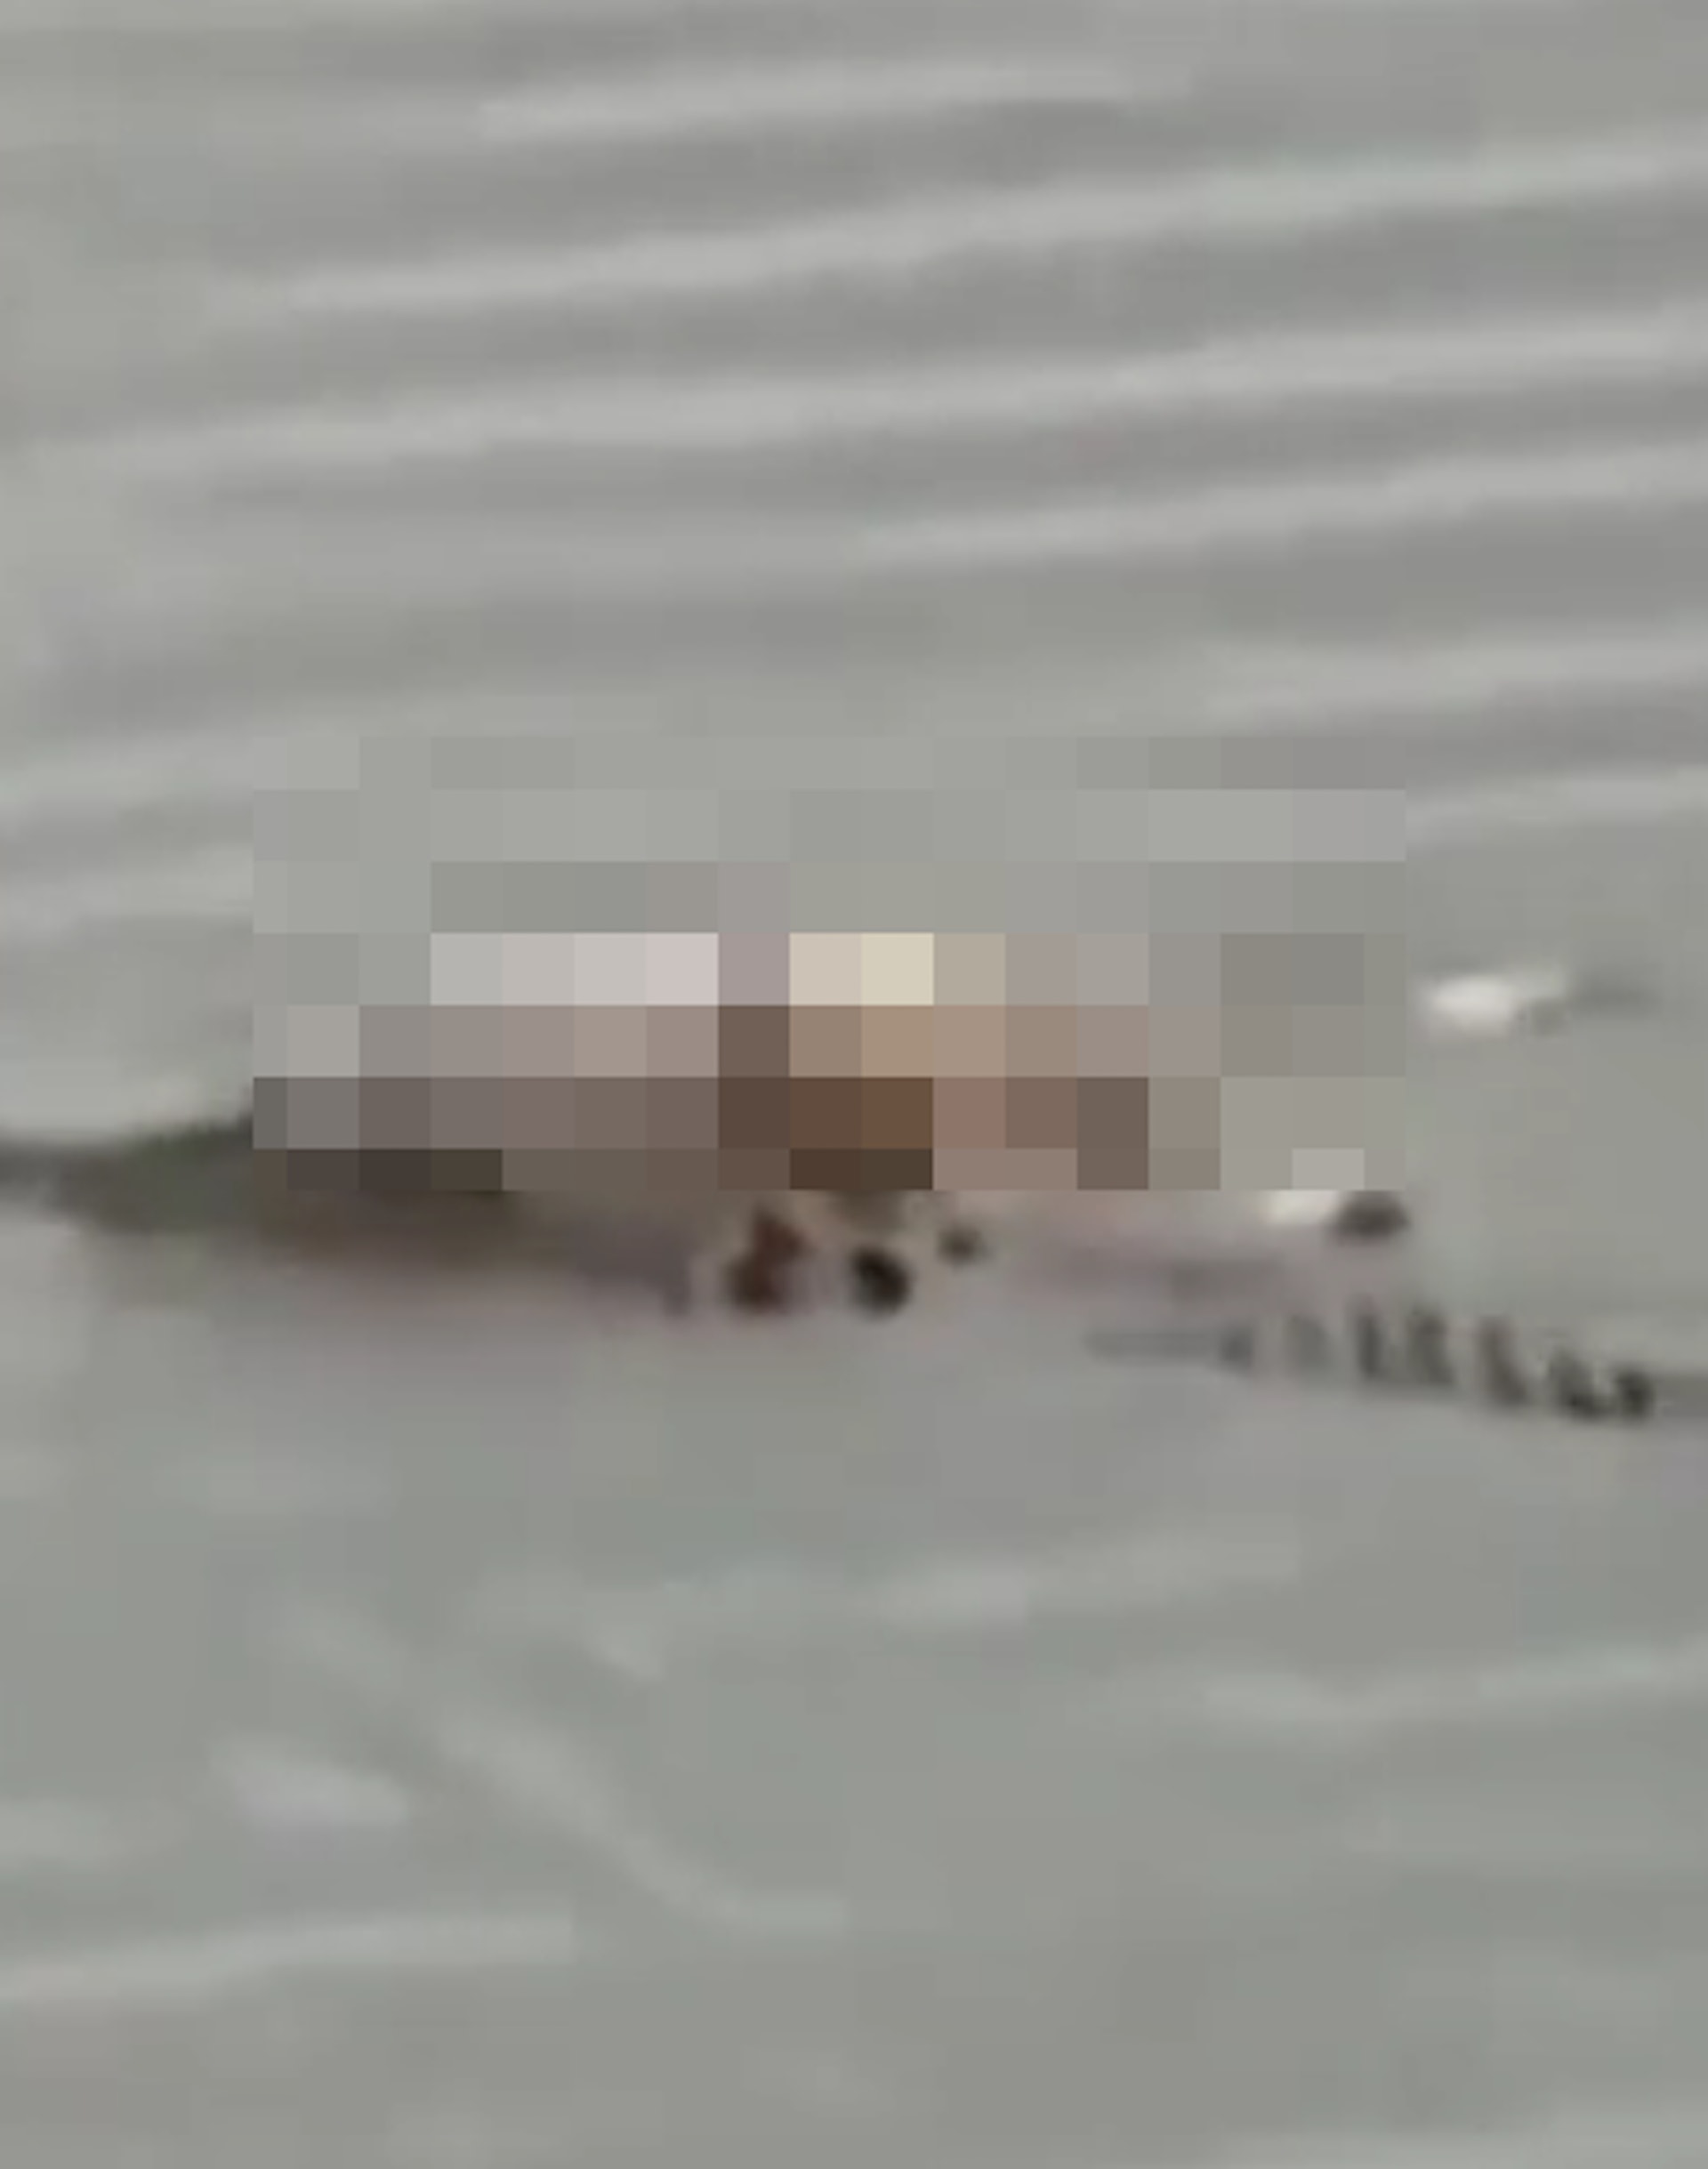 印尼有漁民發現鱷魚叼住1具男童遺體游近岸邊，發現是失蹤2天的4歲童維杰亞。（fb影片截圖）